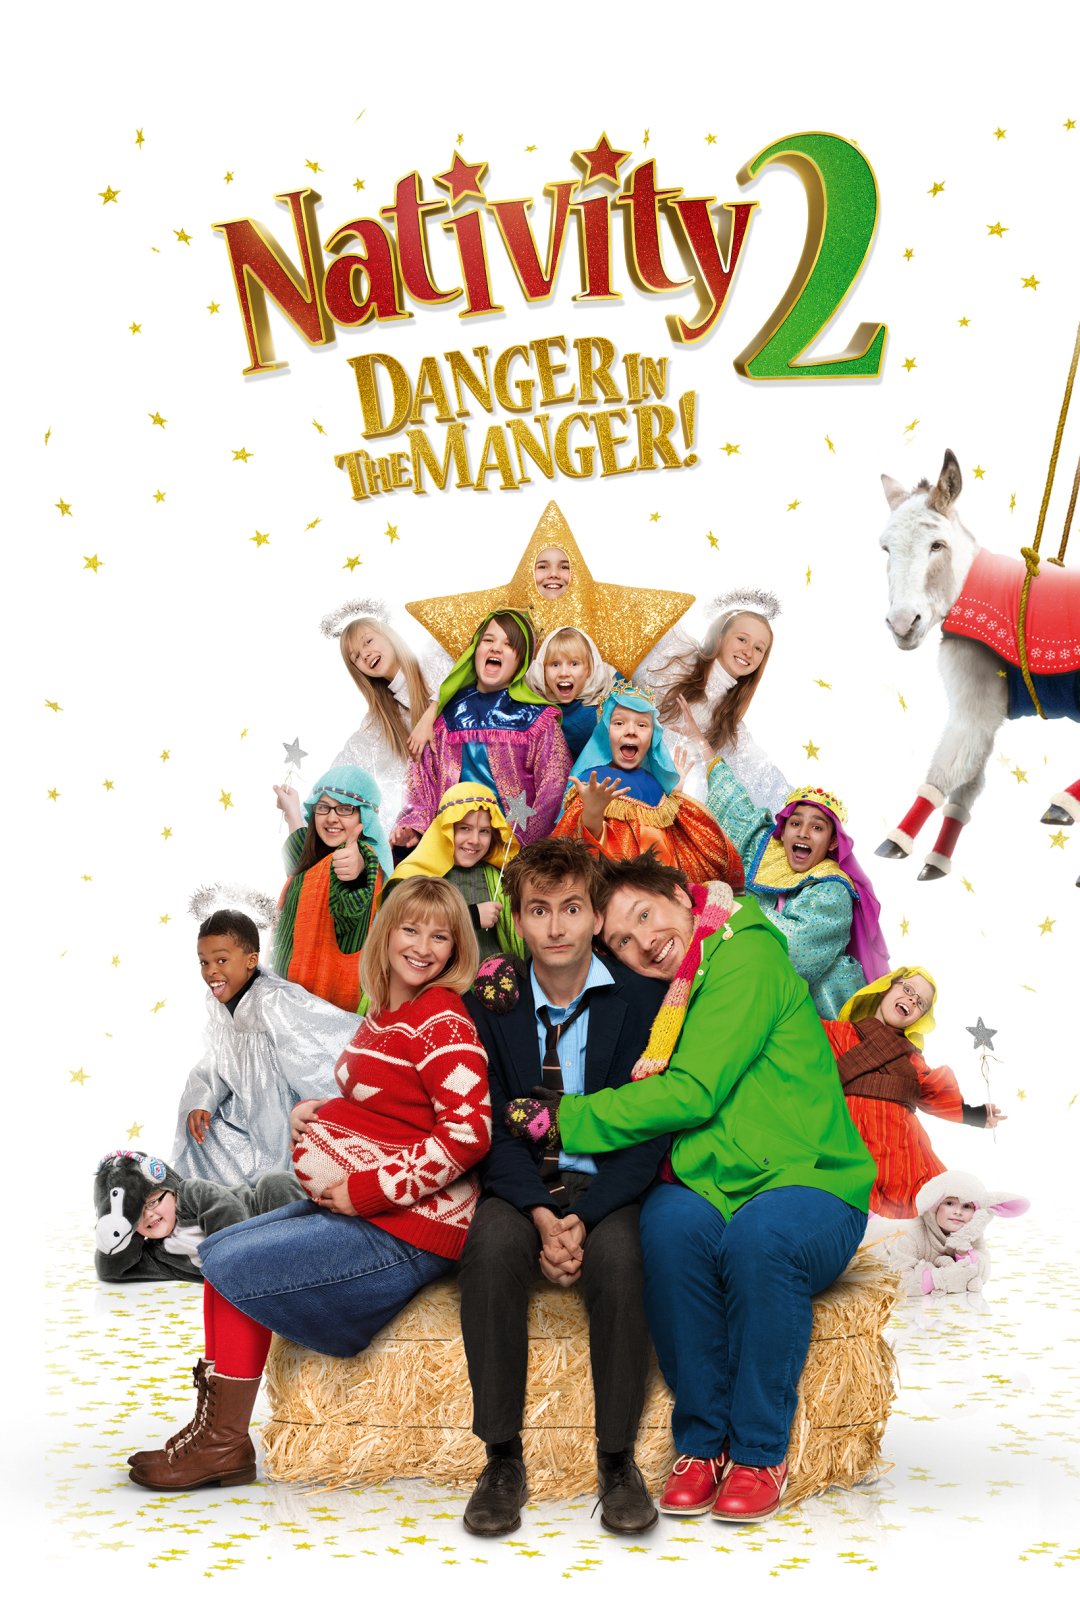 Nativity 2: Danger In The Manger!